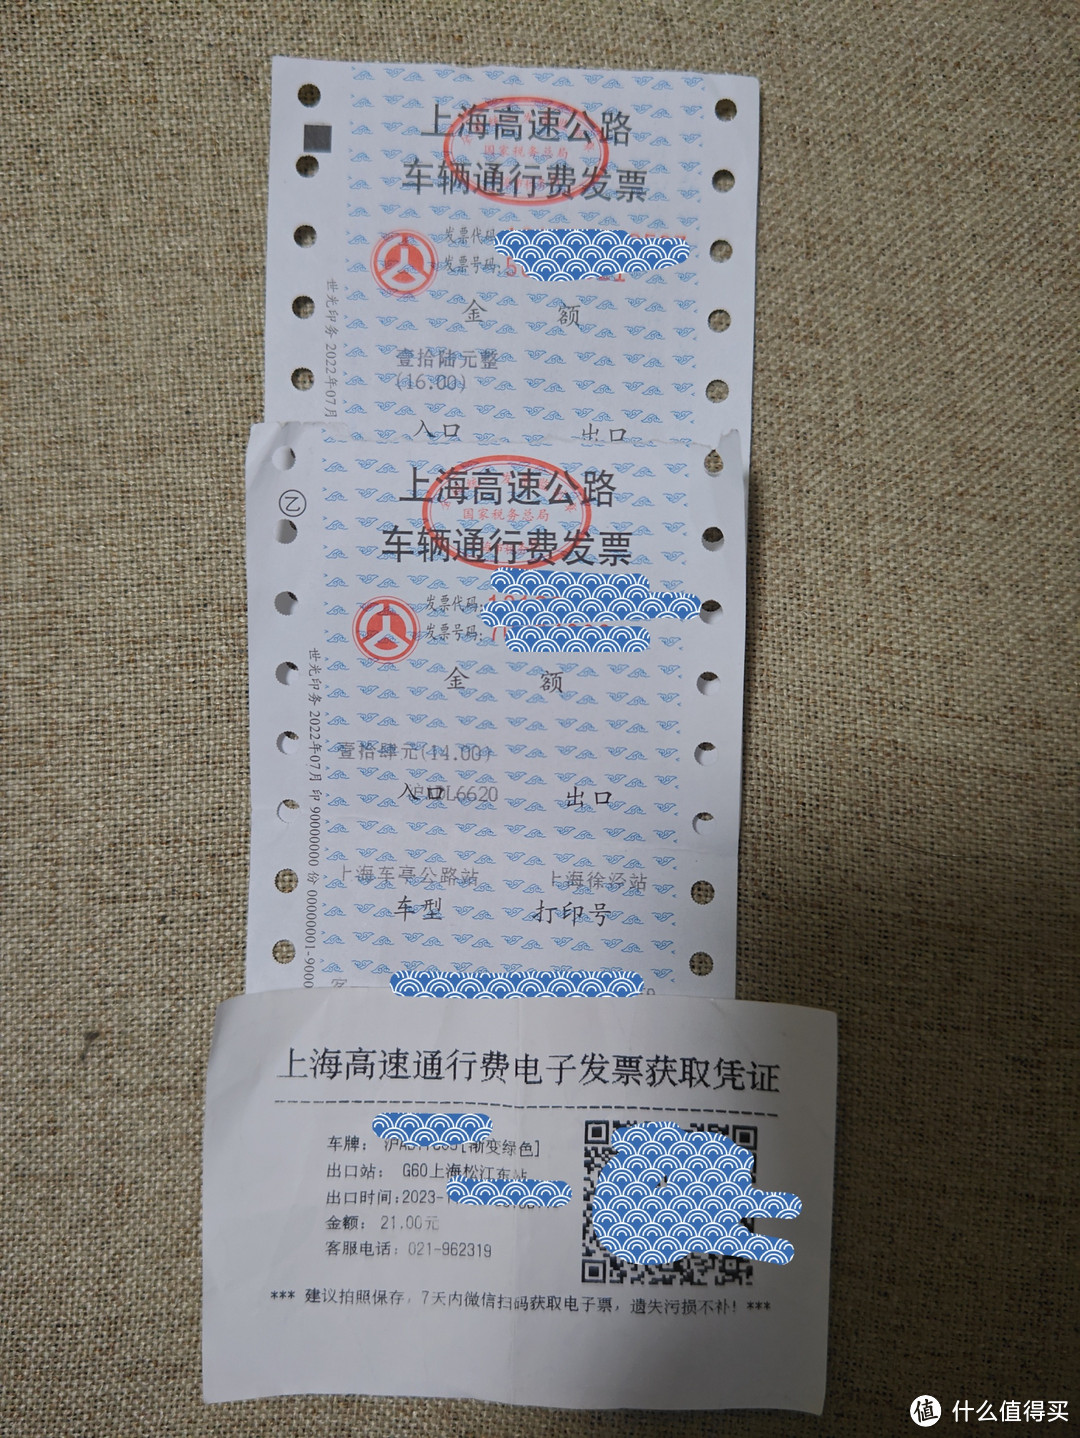 没用的知识之上海高速通行费电子发票获取方法实测